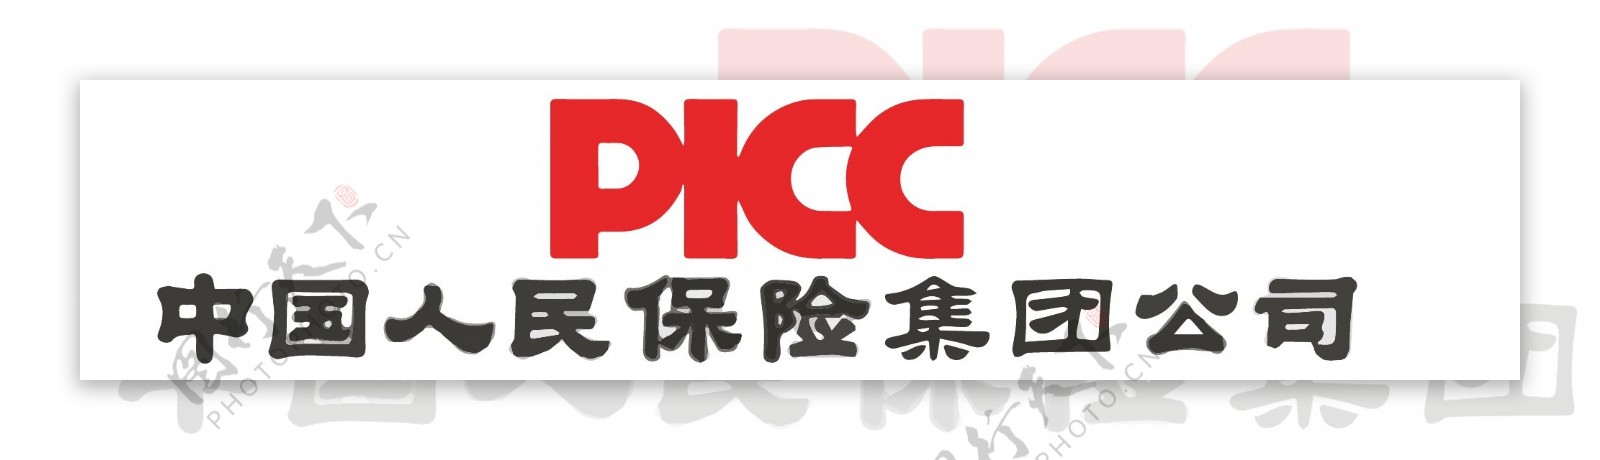 中国人民保险集团公司logo